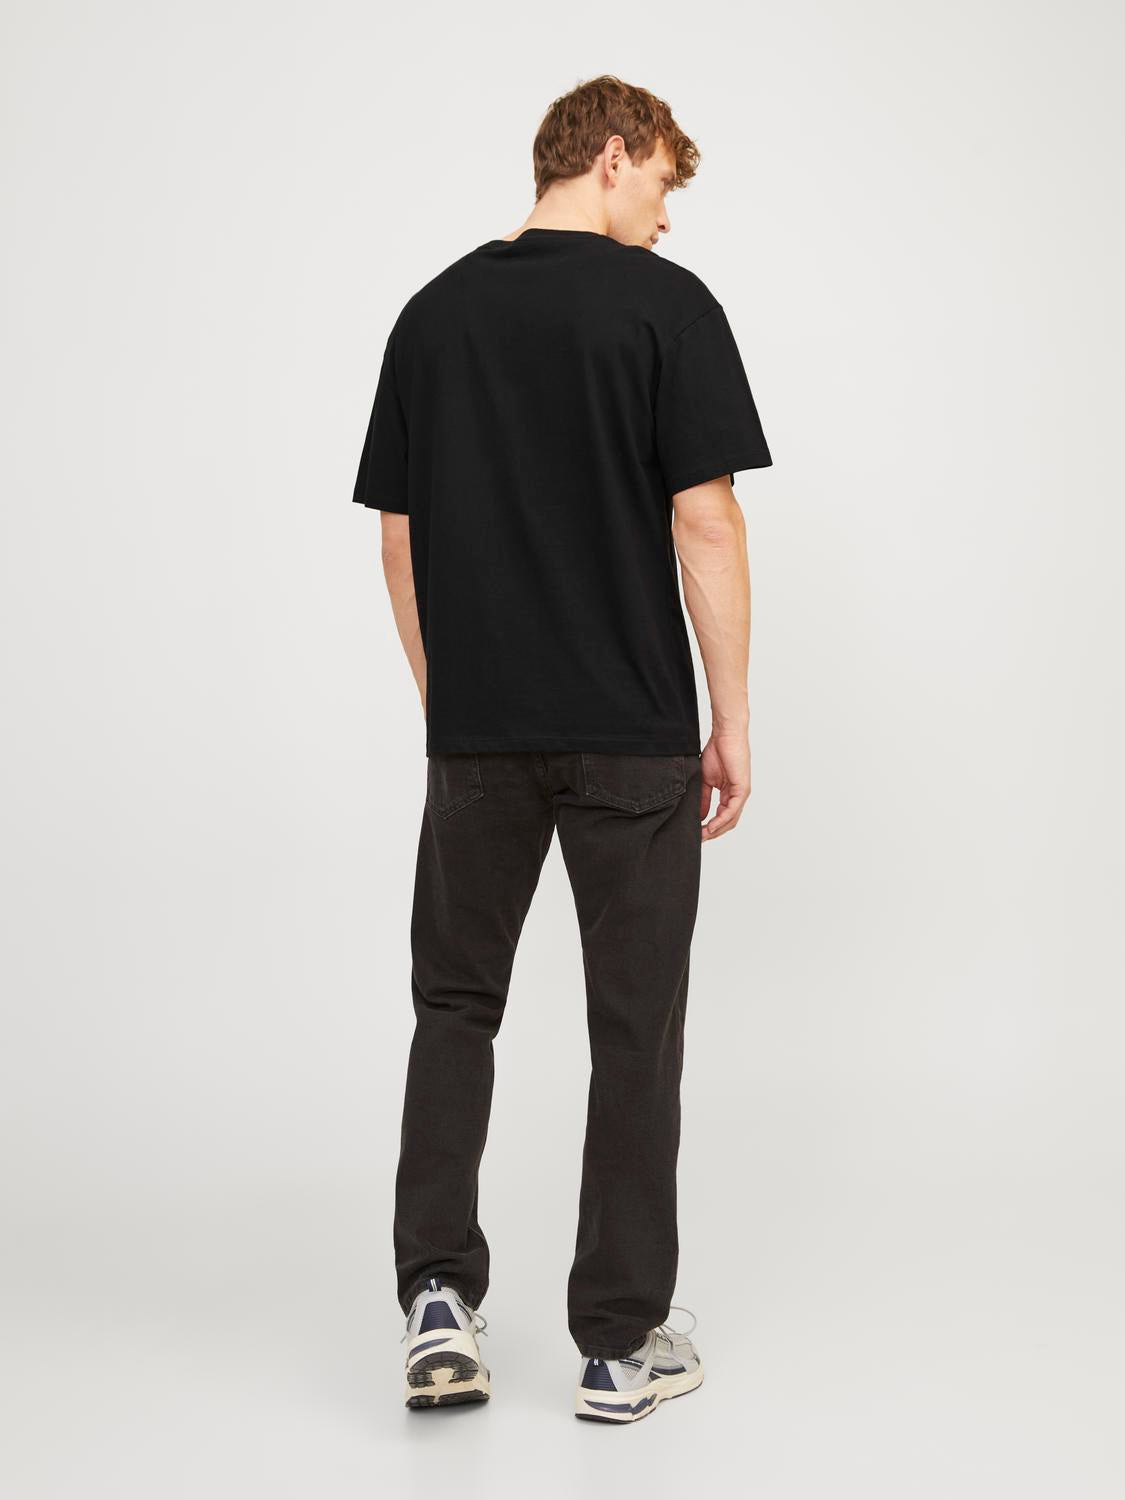 JORBLOCKPOP T-Shirt - Black